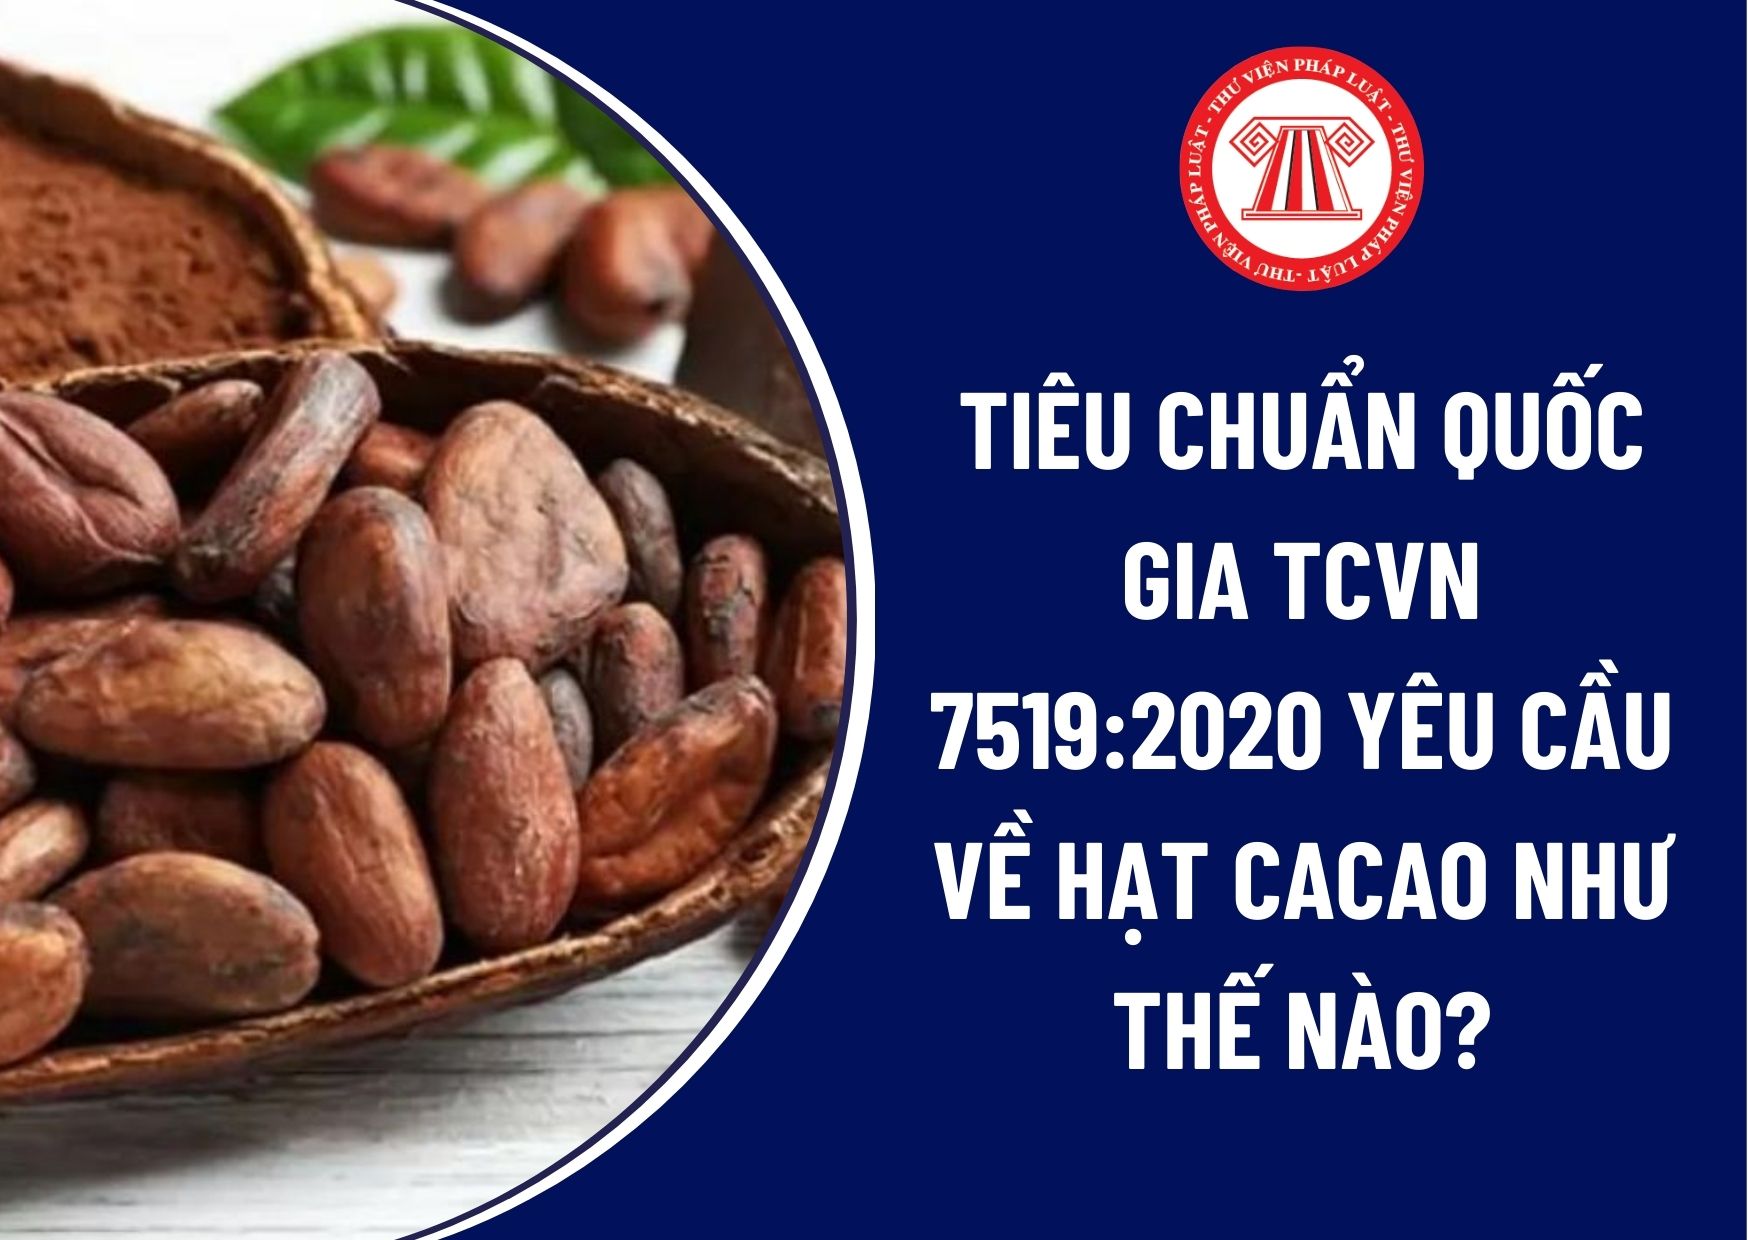 Tiêu chuẩn quốc gia TCVN 7519:2020 yêu cầu về hạt cacao như thế nào? Bao bì, ghi nhãn để bao gói ra sao? Cách bảo quản cacao đã bao gói là gì?